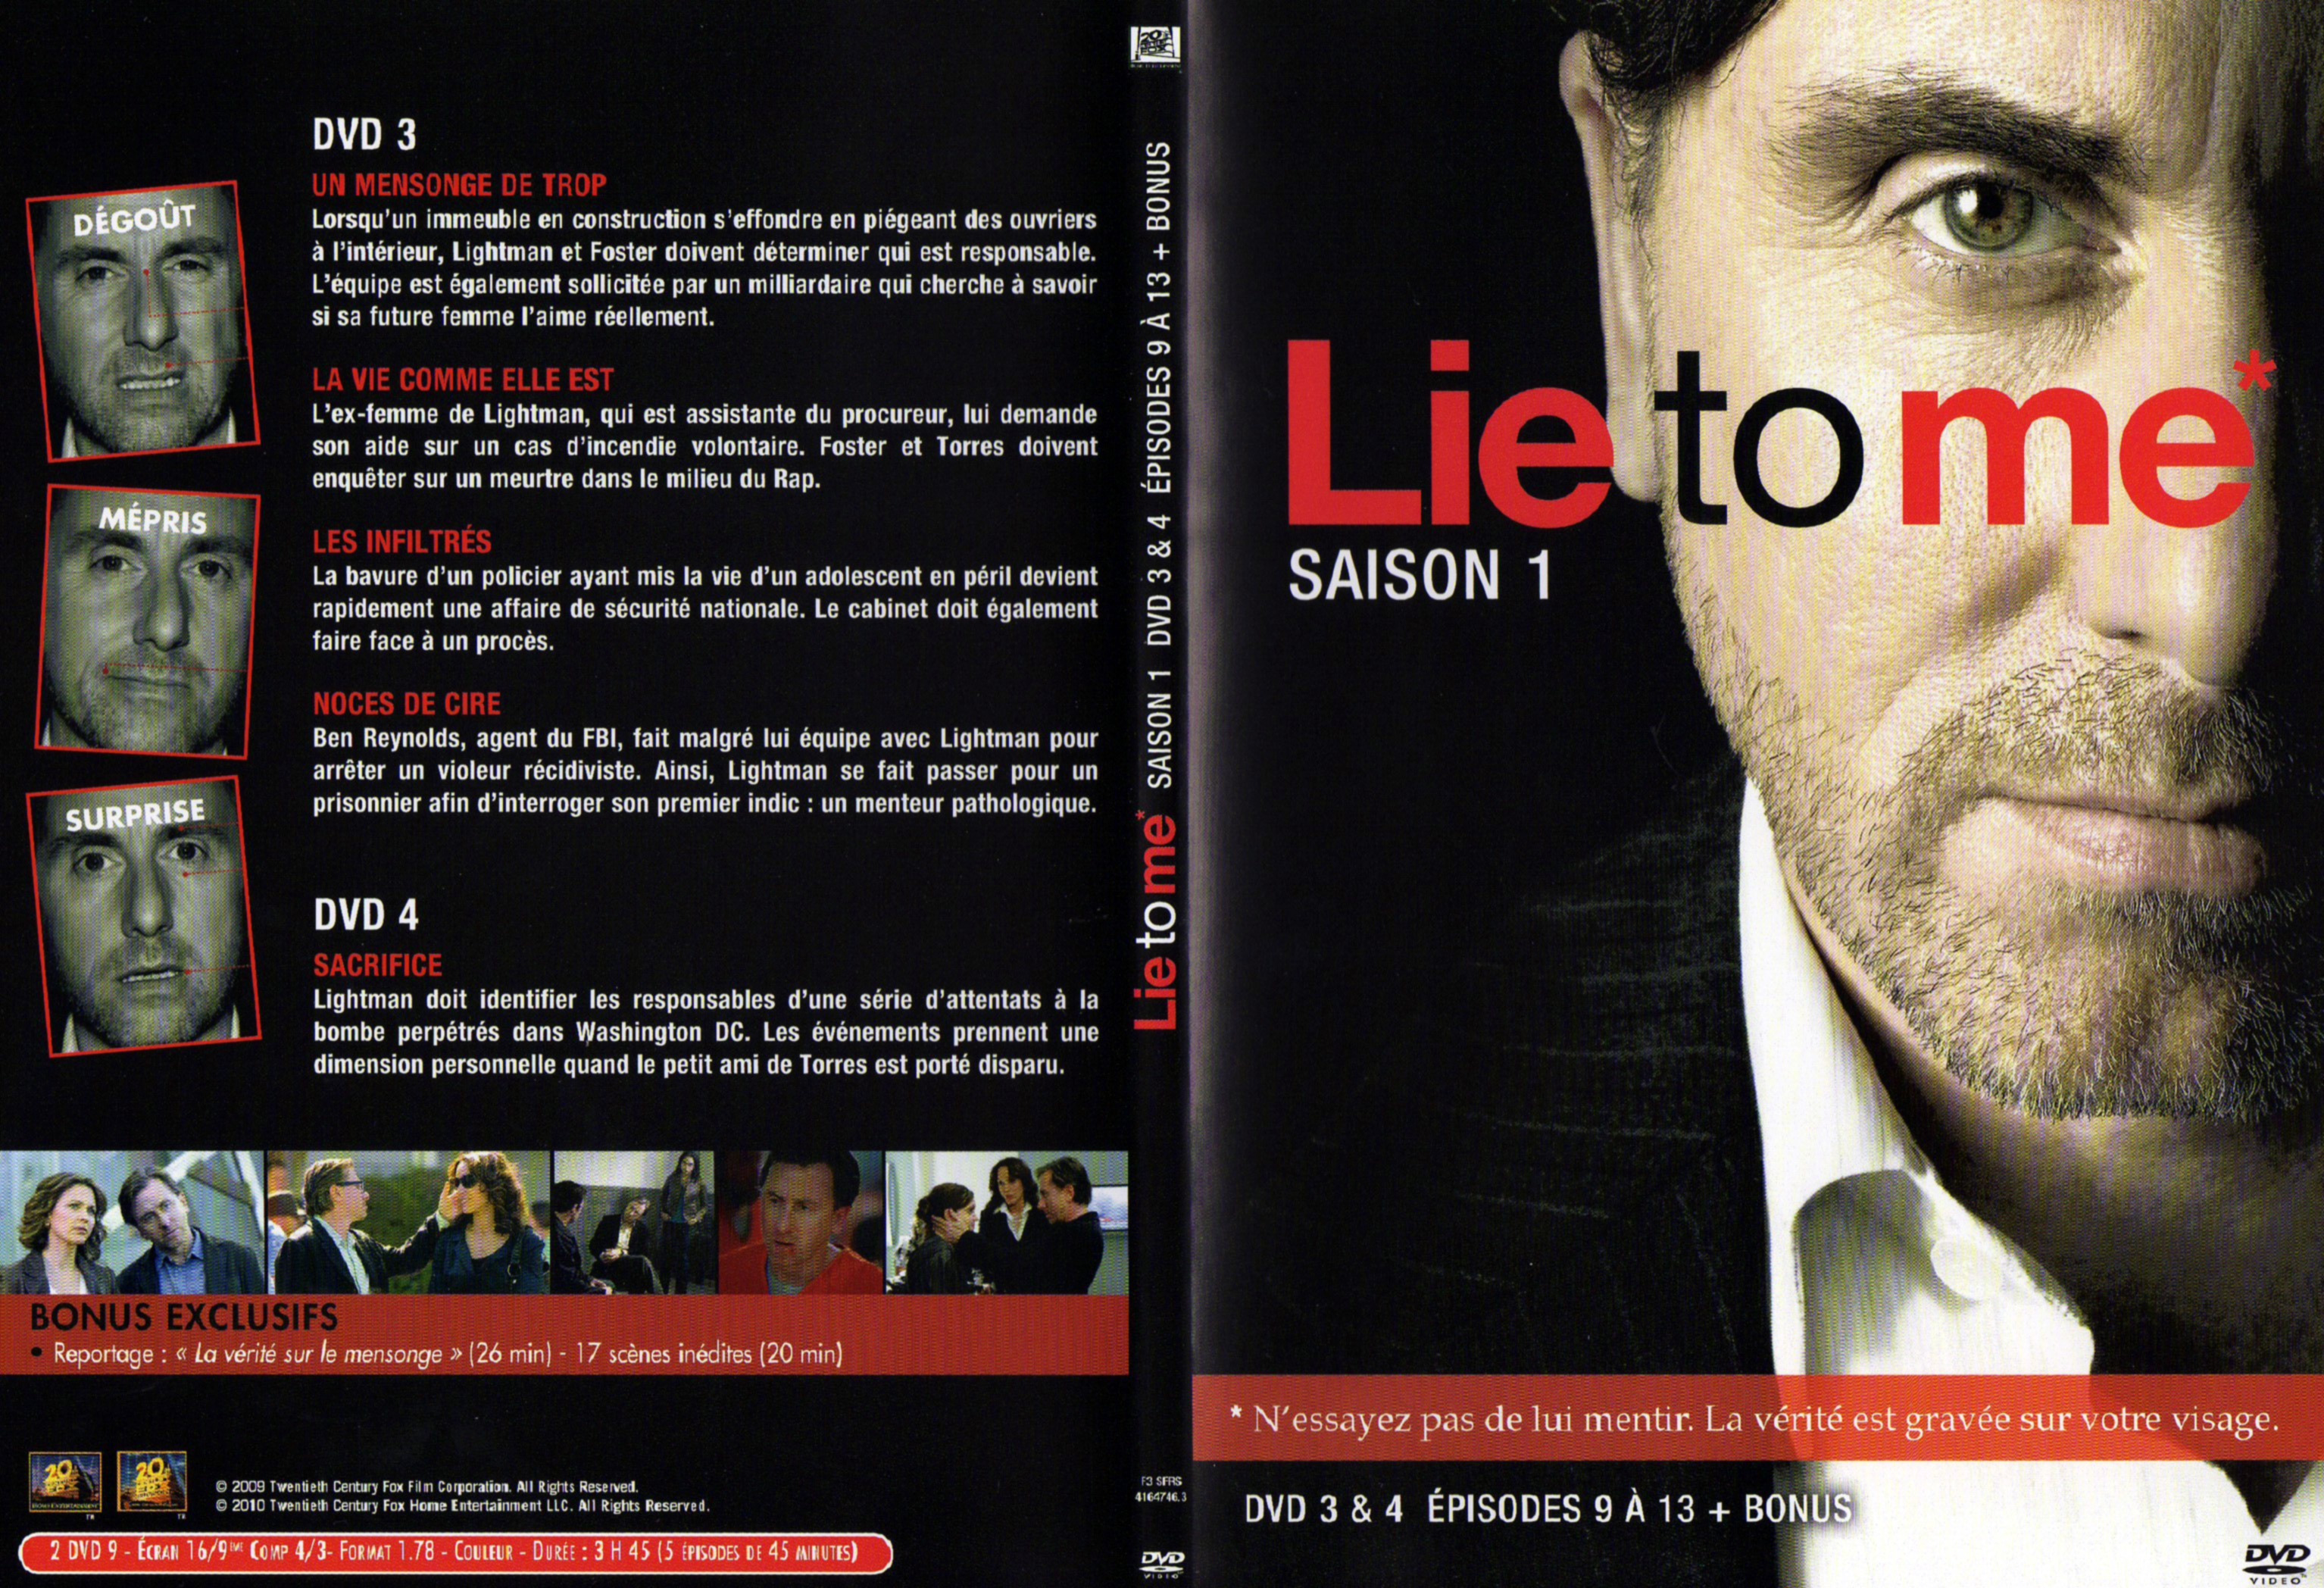 Jaquette DVD Lie to me Saison 1 DVD 3